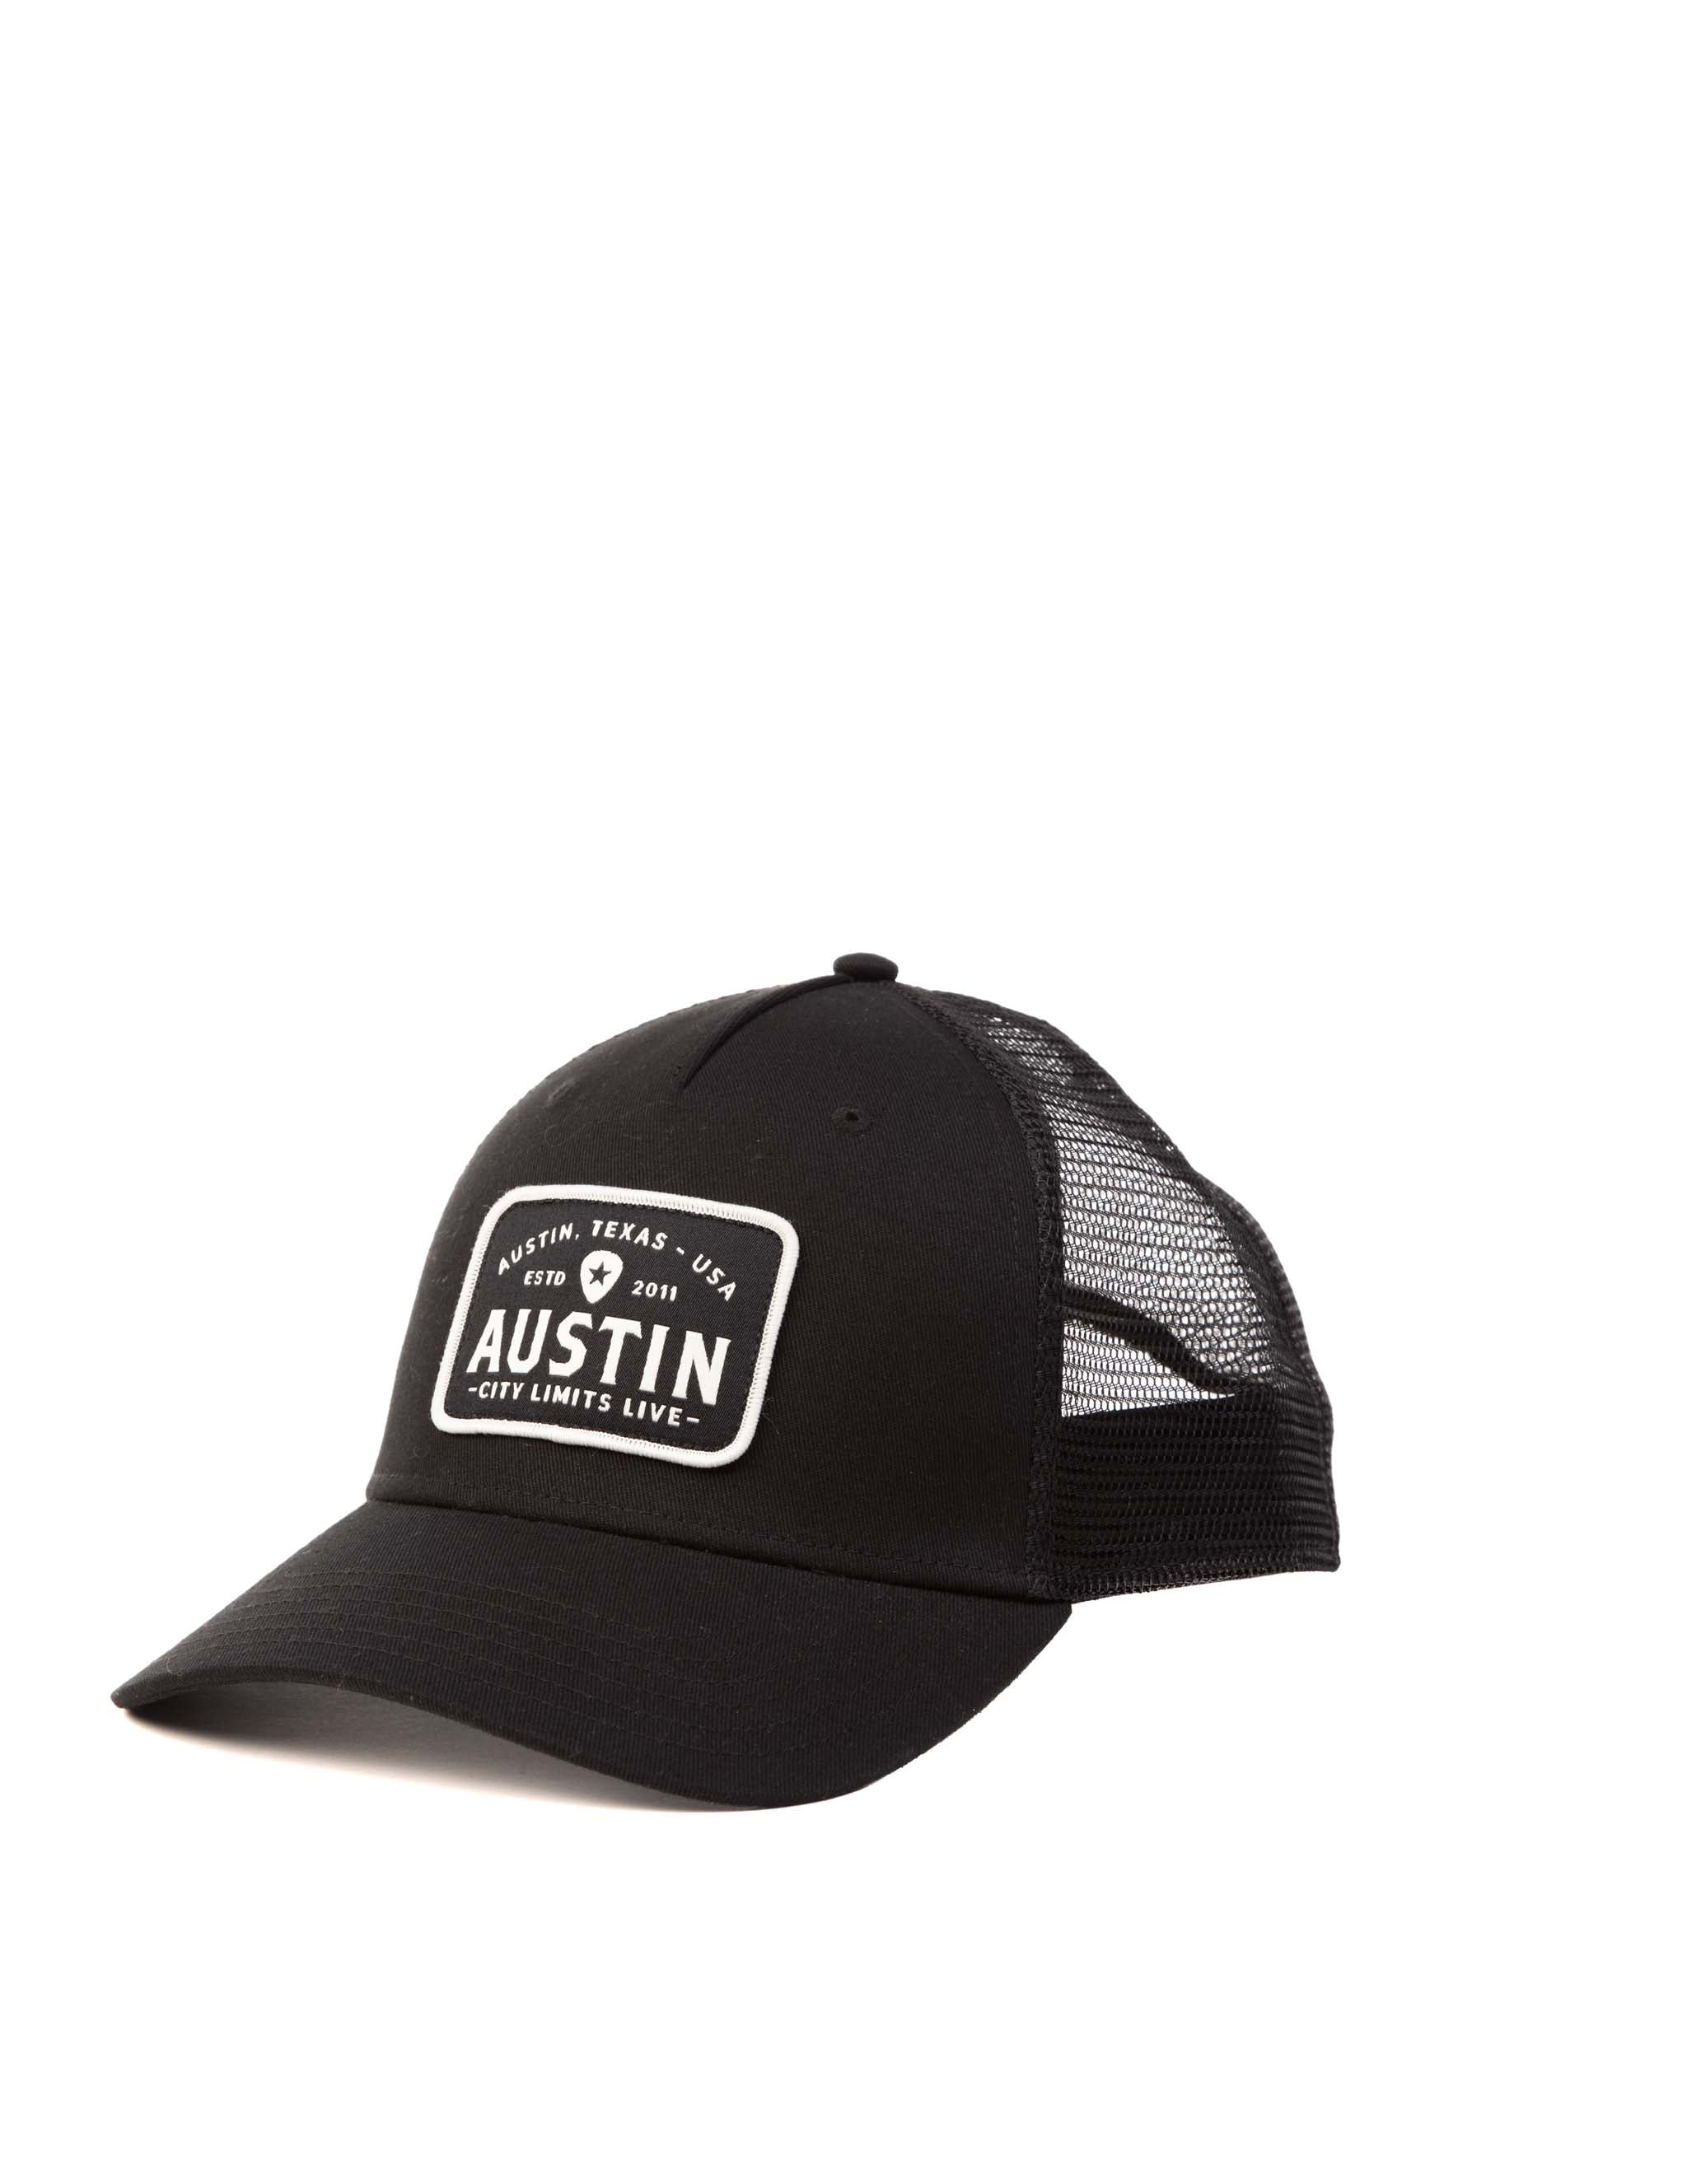 Austin City Limits Live Classic Black Patch Hat